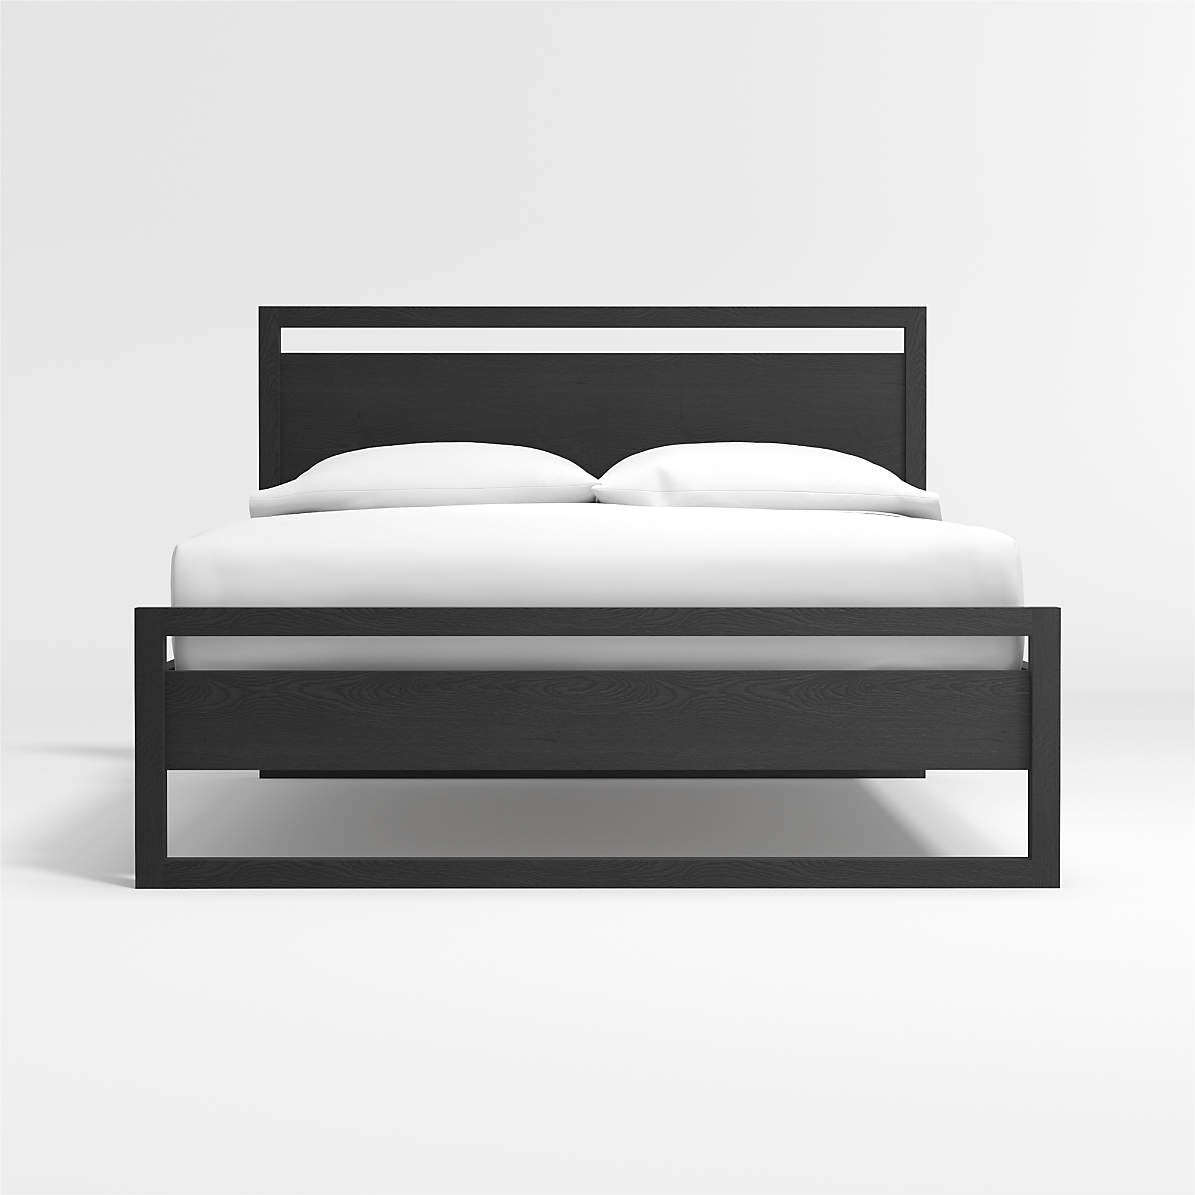 Linea Black King Bed Reviews Crate, Black King Platform Bed Frame